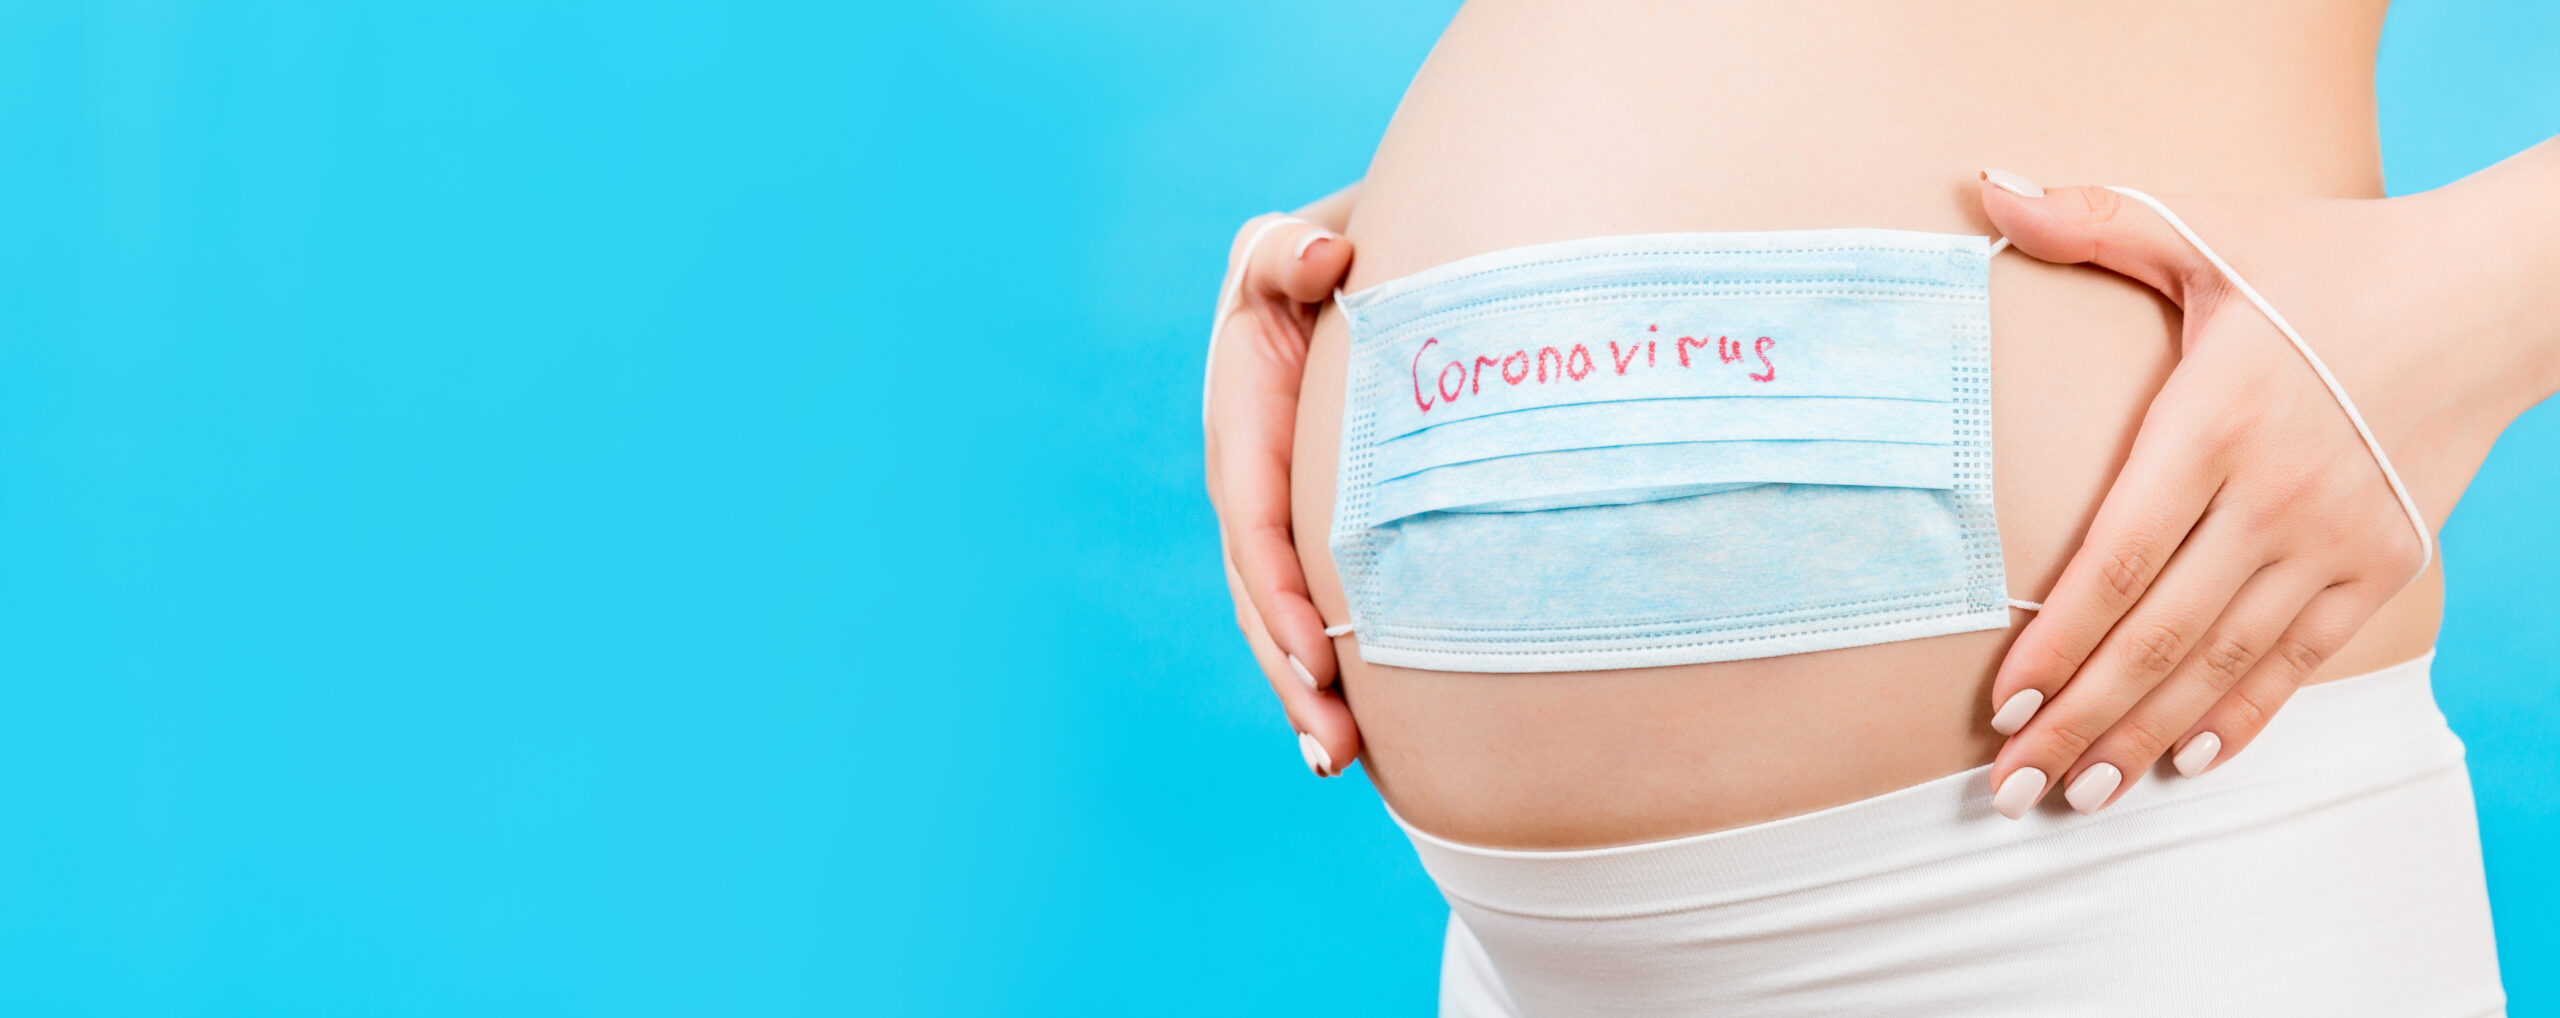 Εγκυμοσύνη Κορωνοϊός: Σοβαρότερα τα συμπτώματα της Covid-19 στις έγκυες σύμφωνα με 2η μεγάλη έρευνα